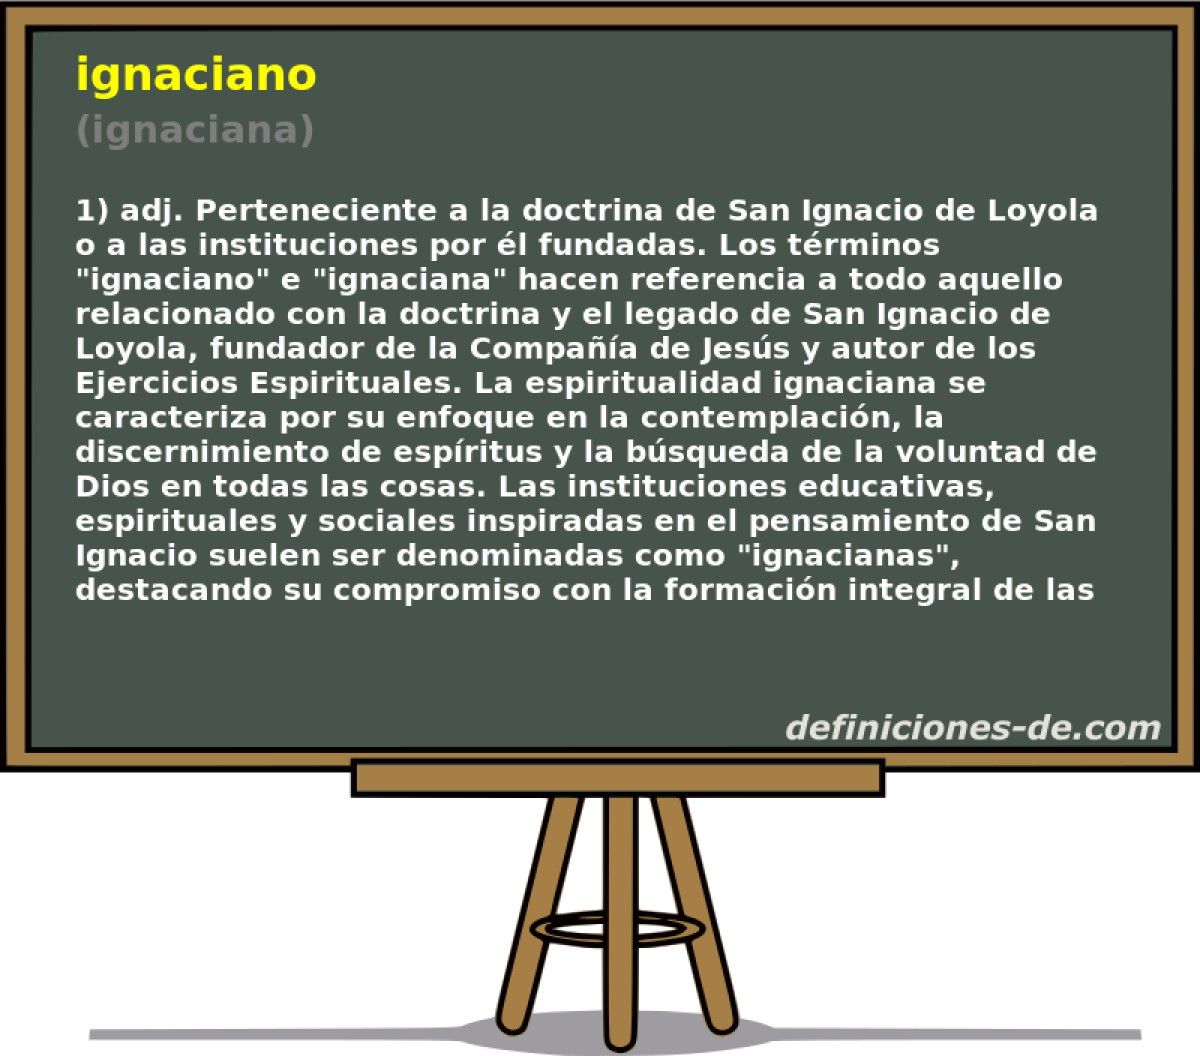 ignaciano (ignaciana)